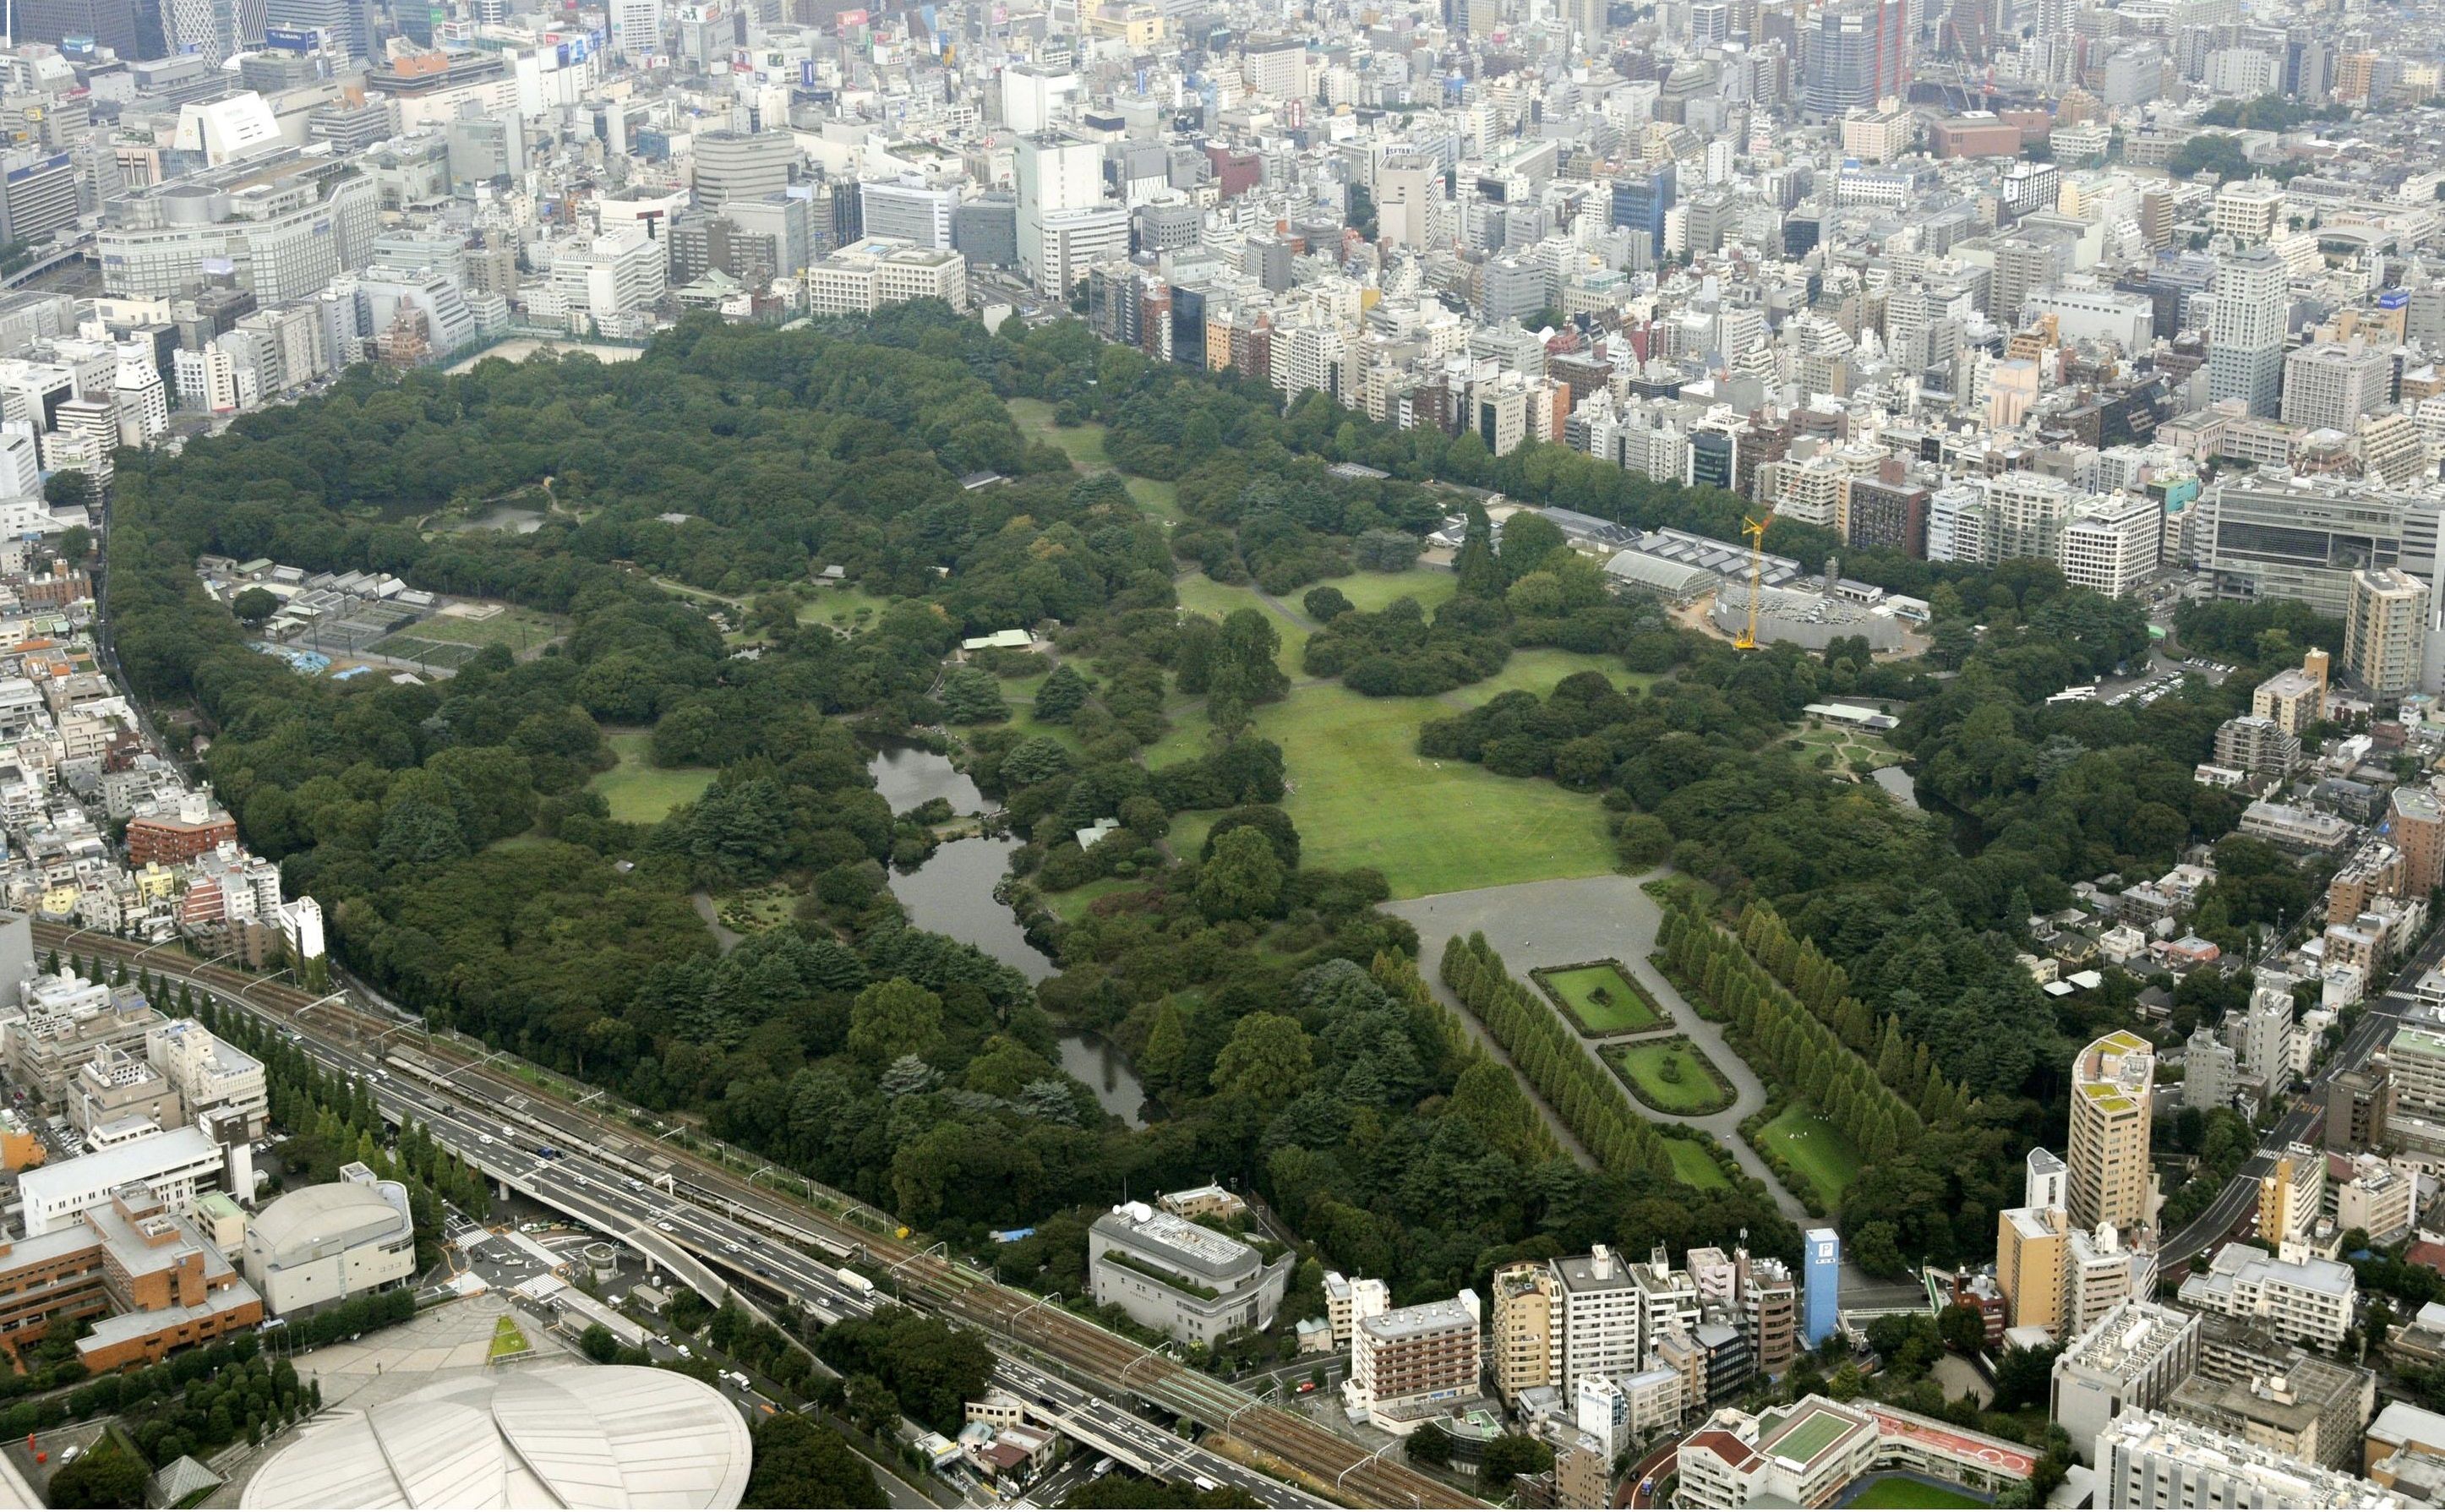 Shinjuku Gyoen National Garden (sky view). Tokyo. Shinjuku